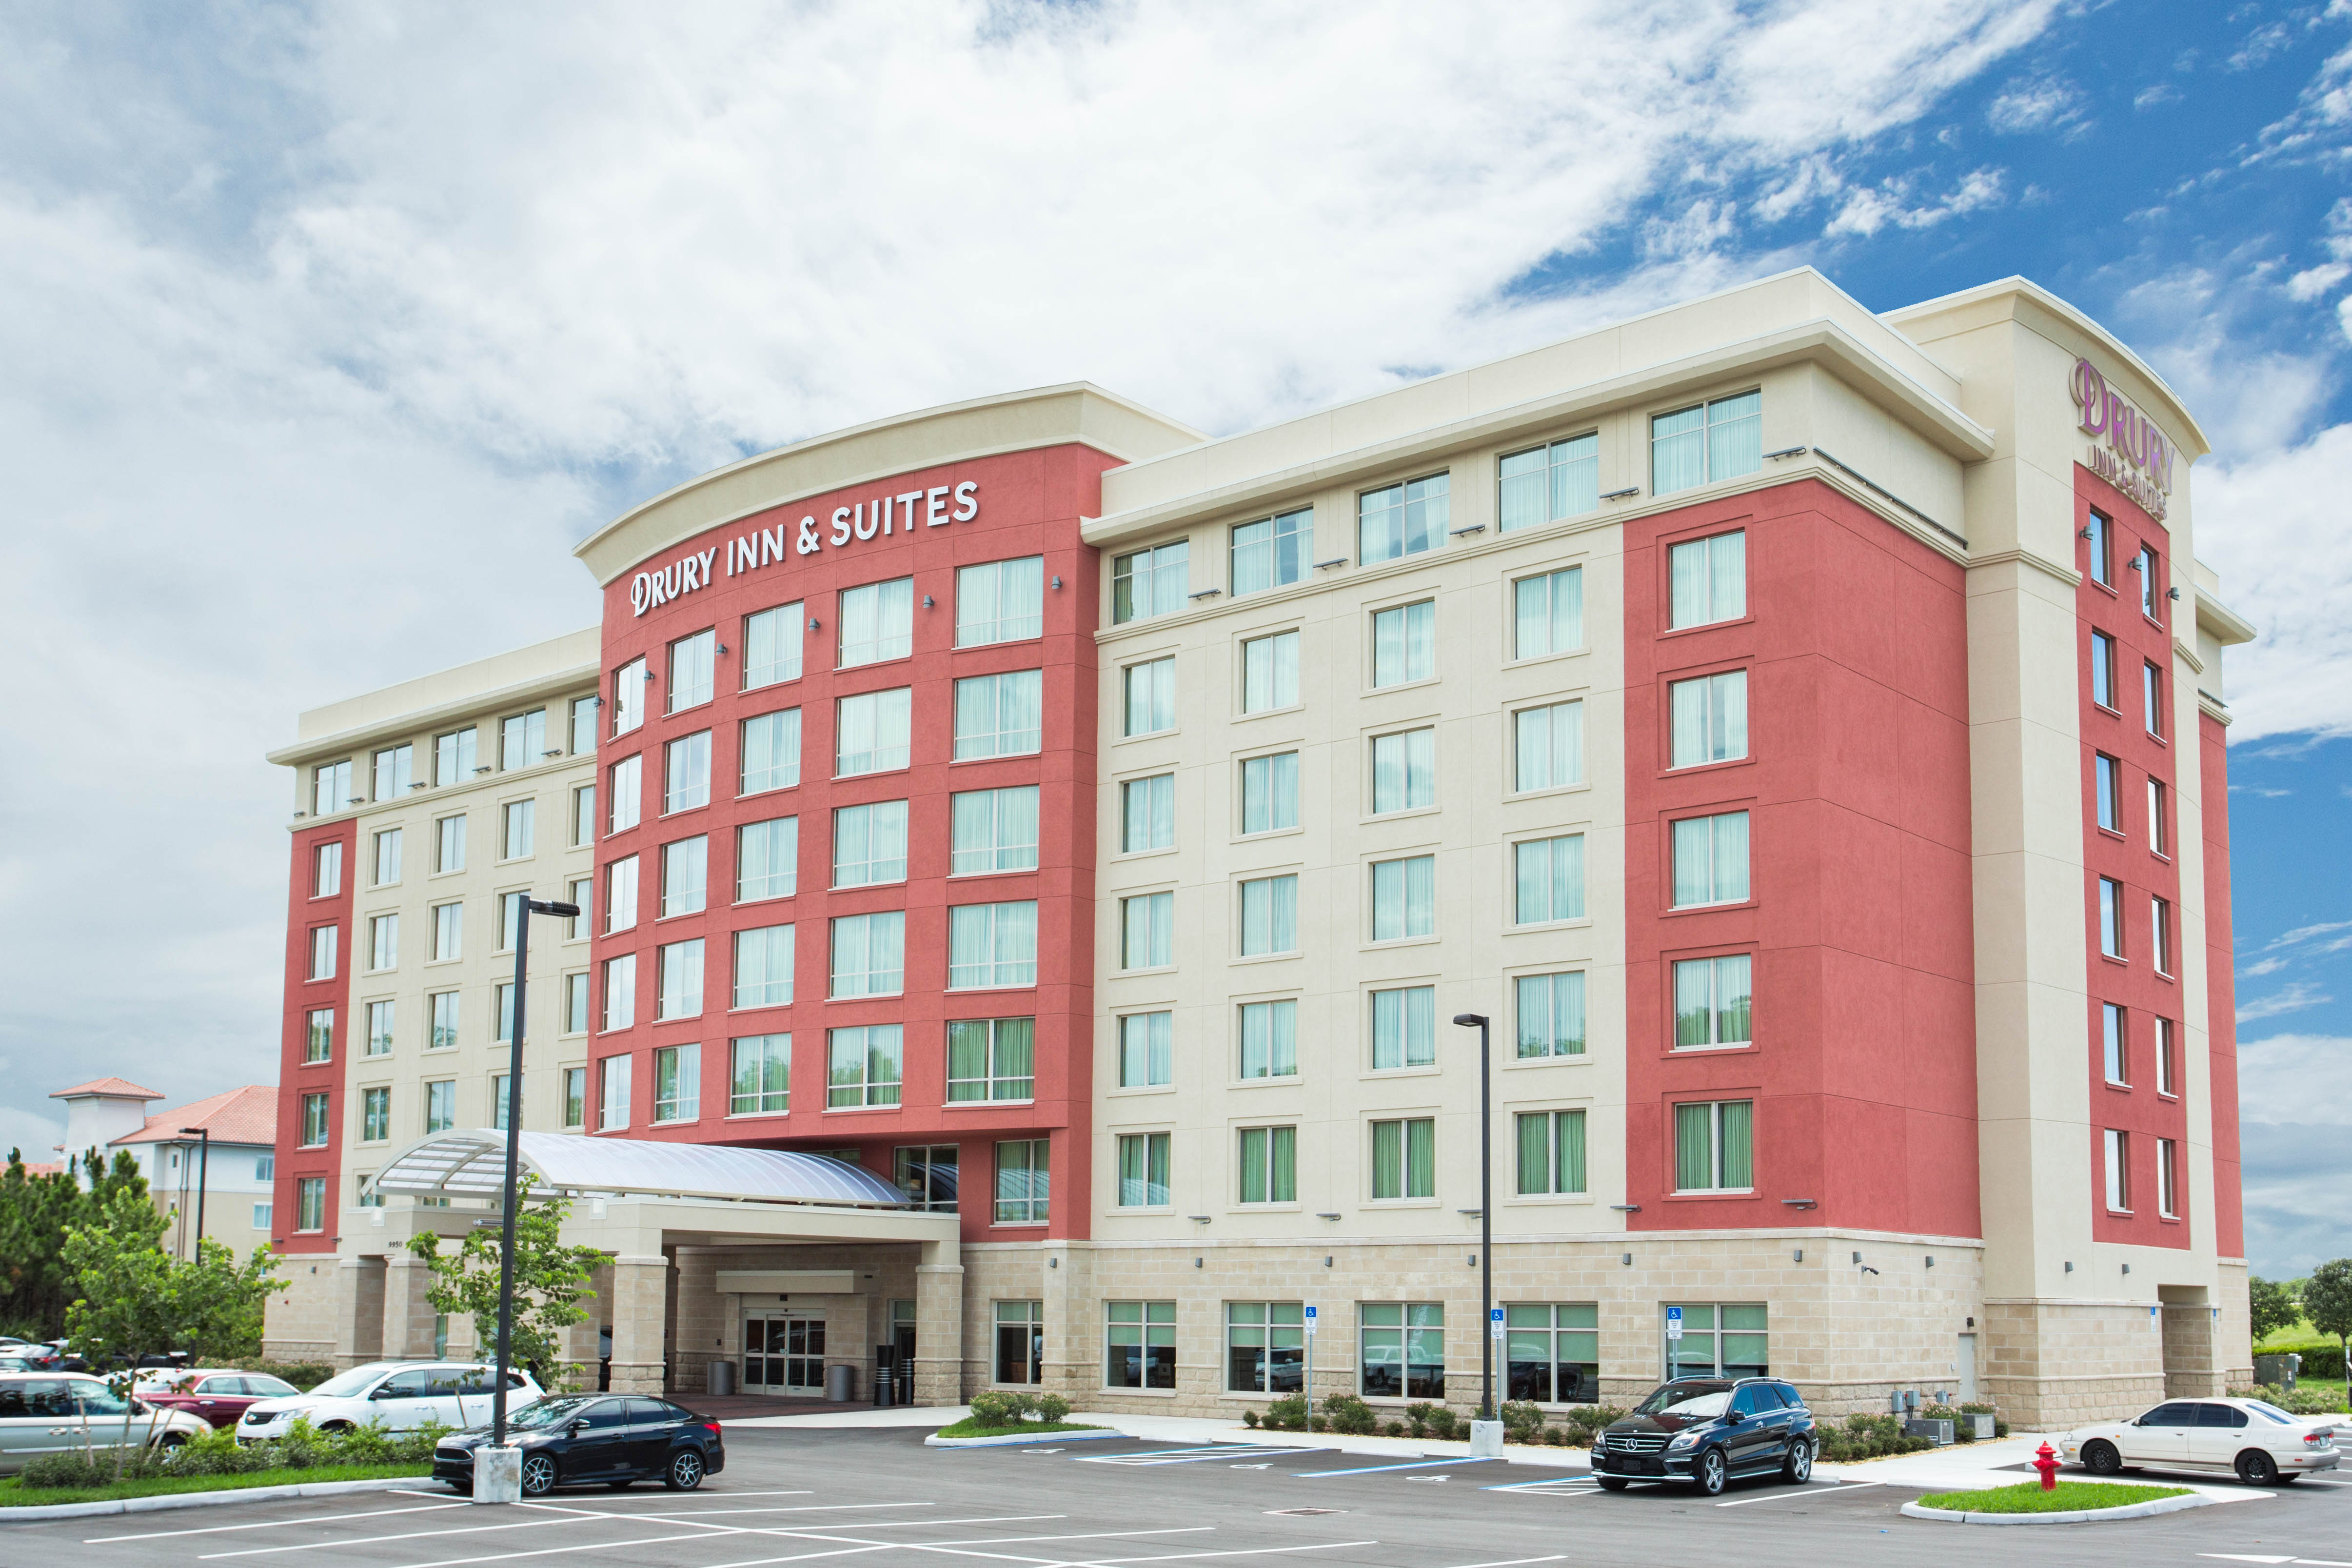 Drury Inn Suites Fort Myers Airport Fgcu Drury Hotels